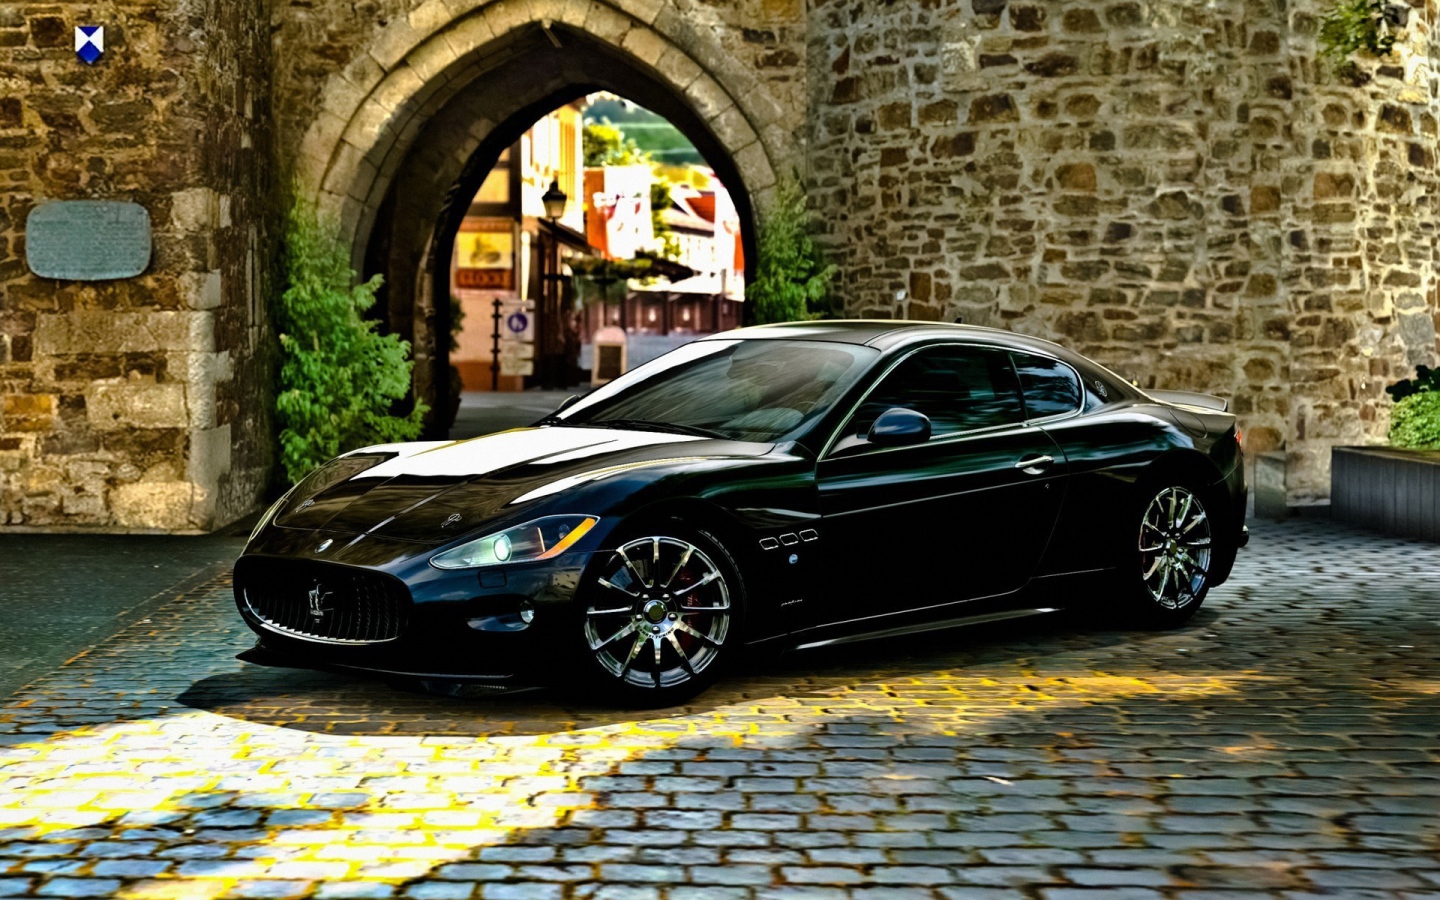 Black Maserati gran turismo in stone arch